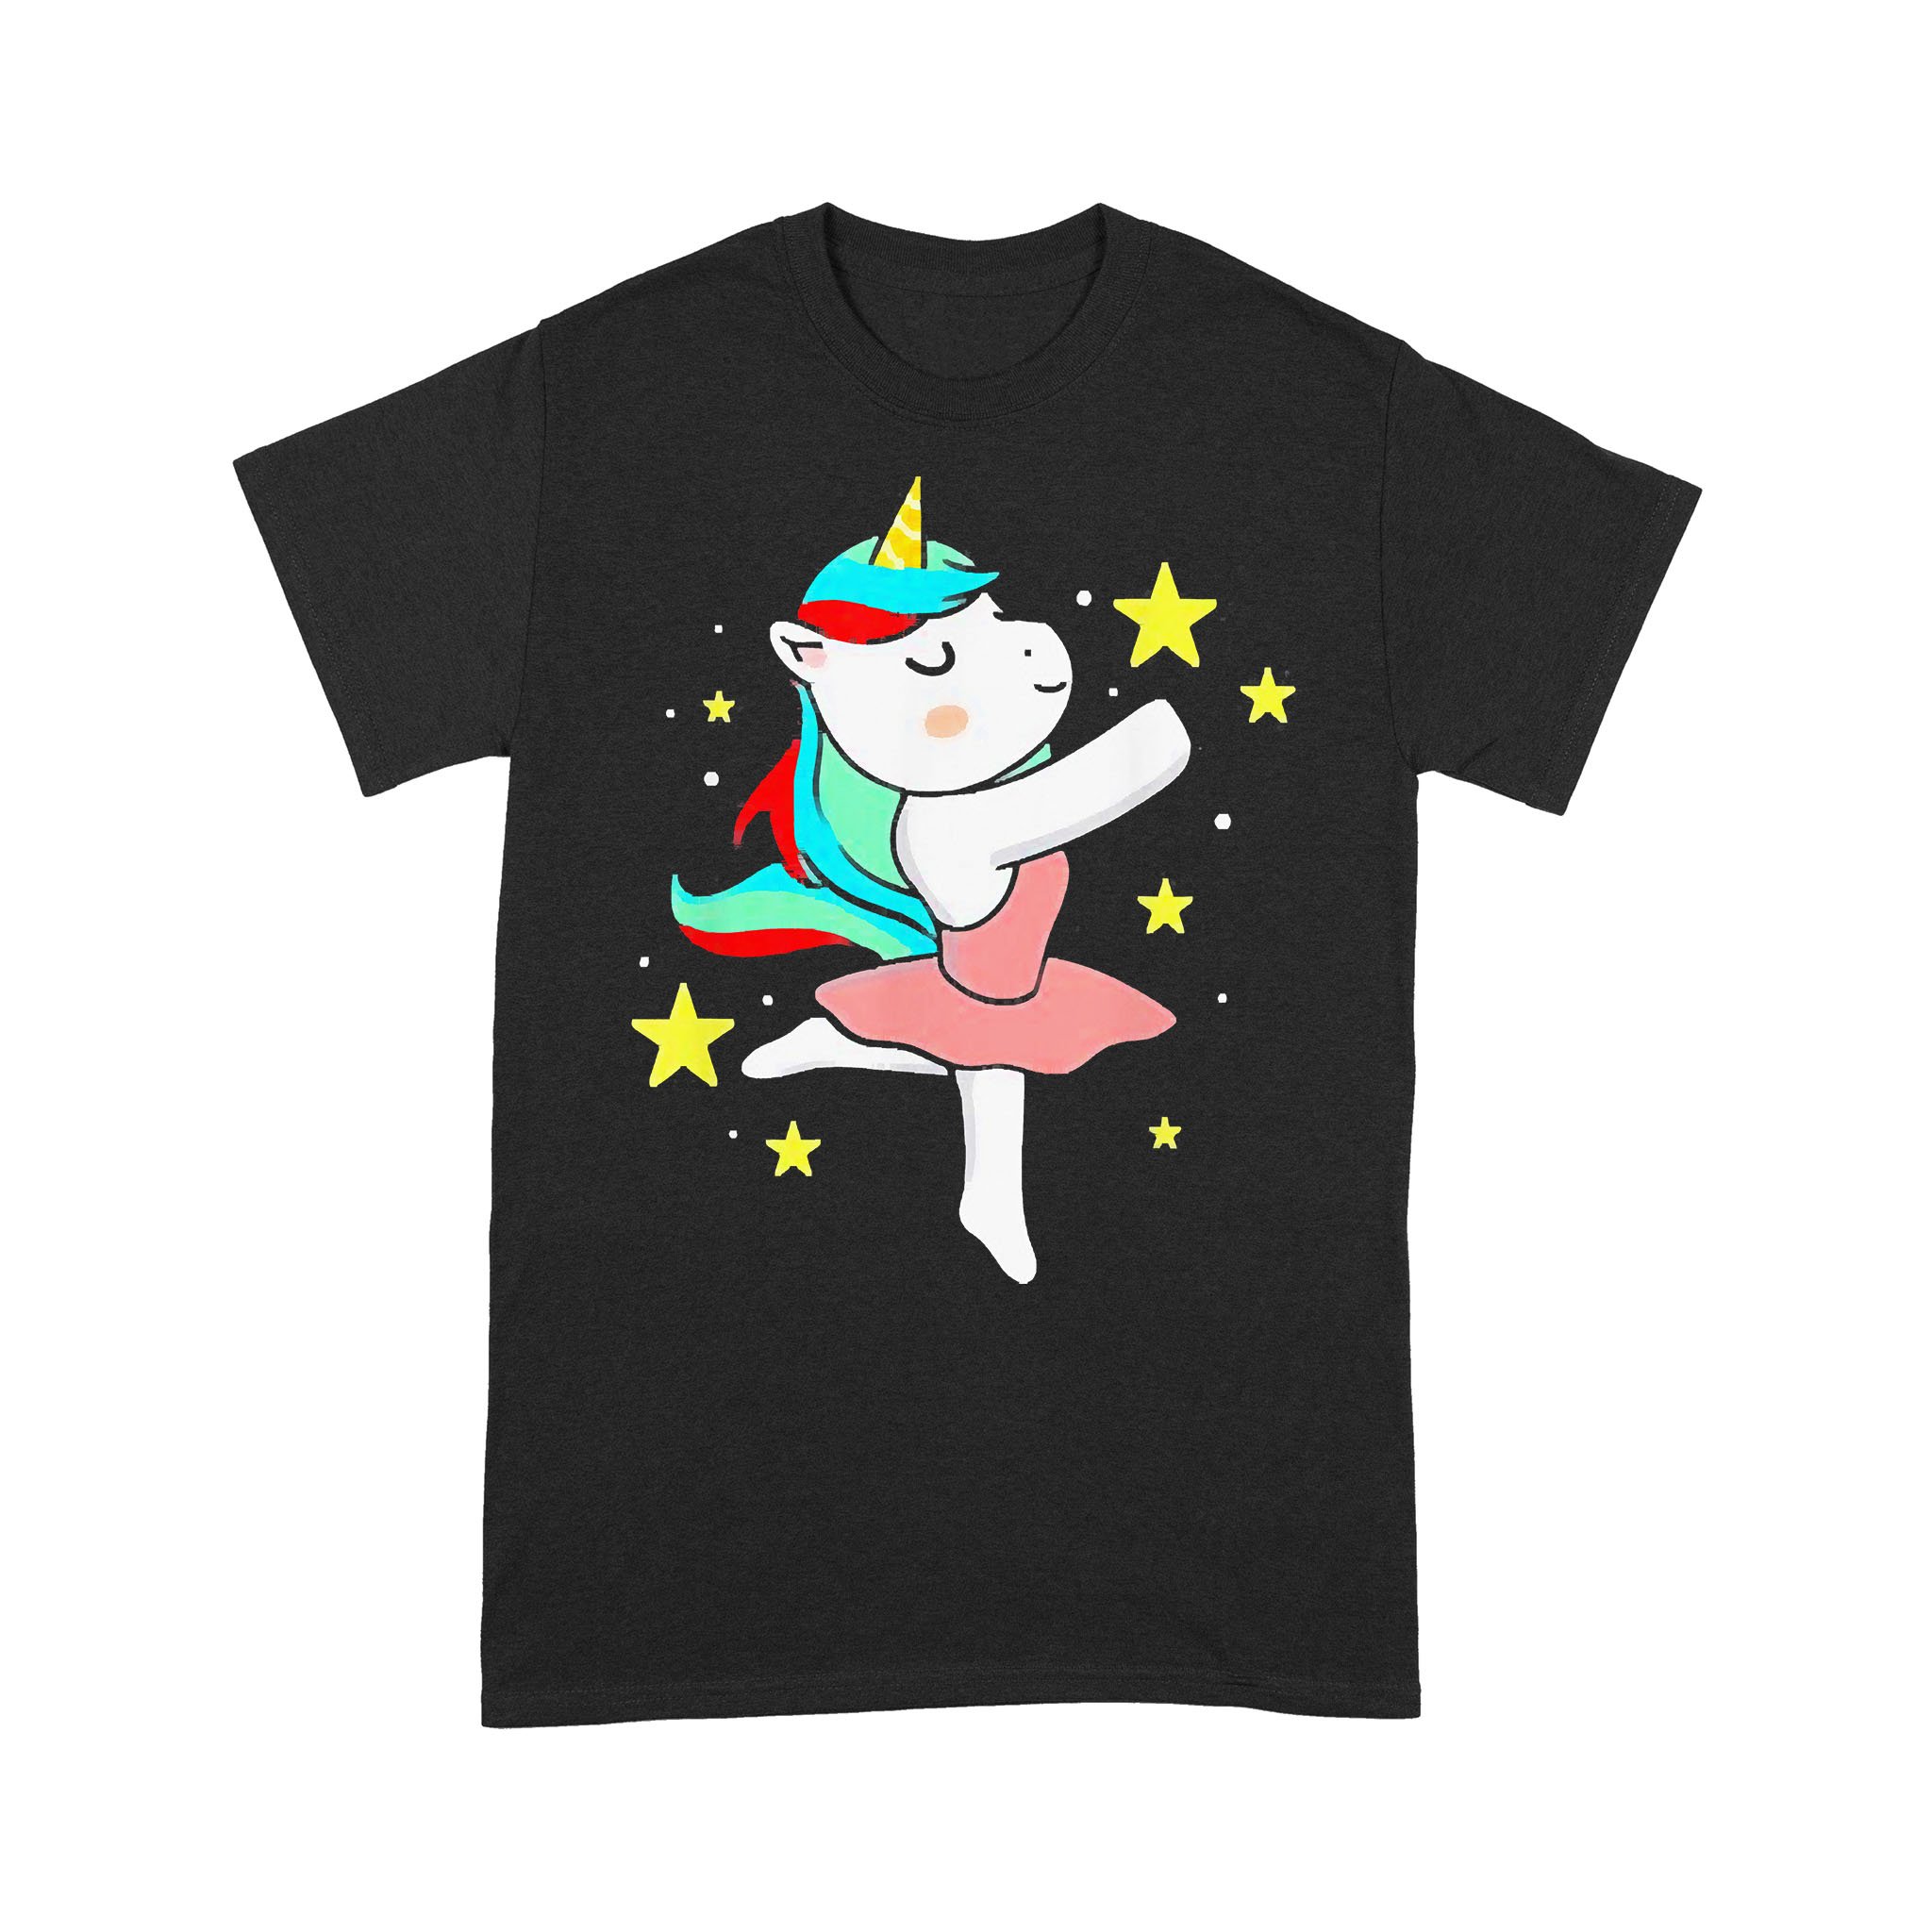 Dancing Unicorn Ballet Dancer T-shirt